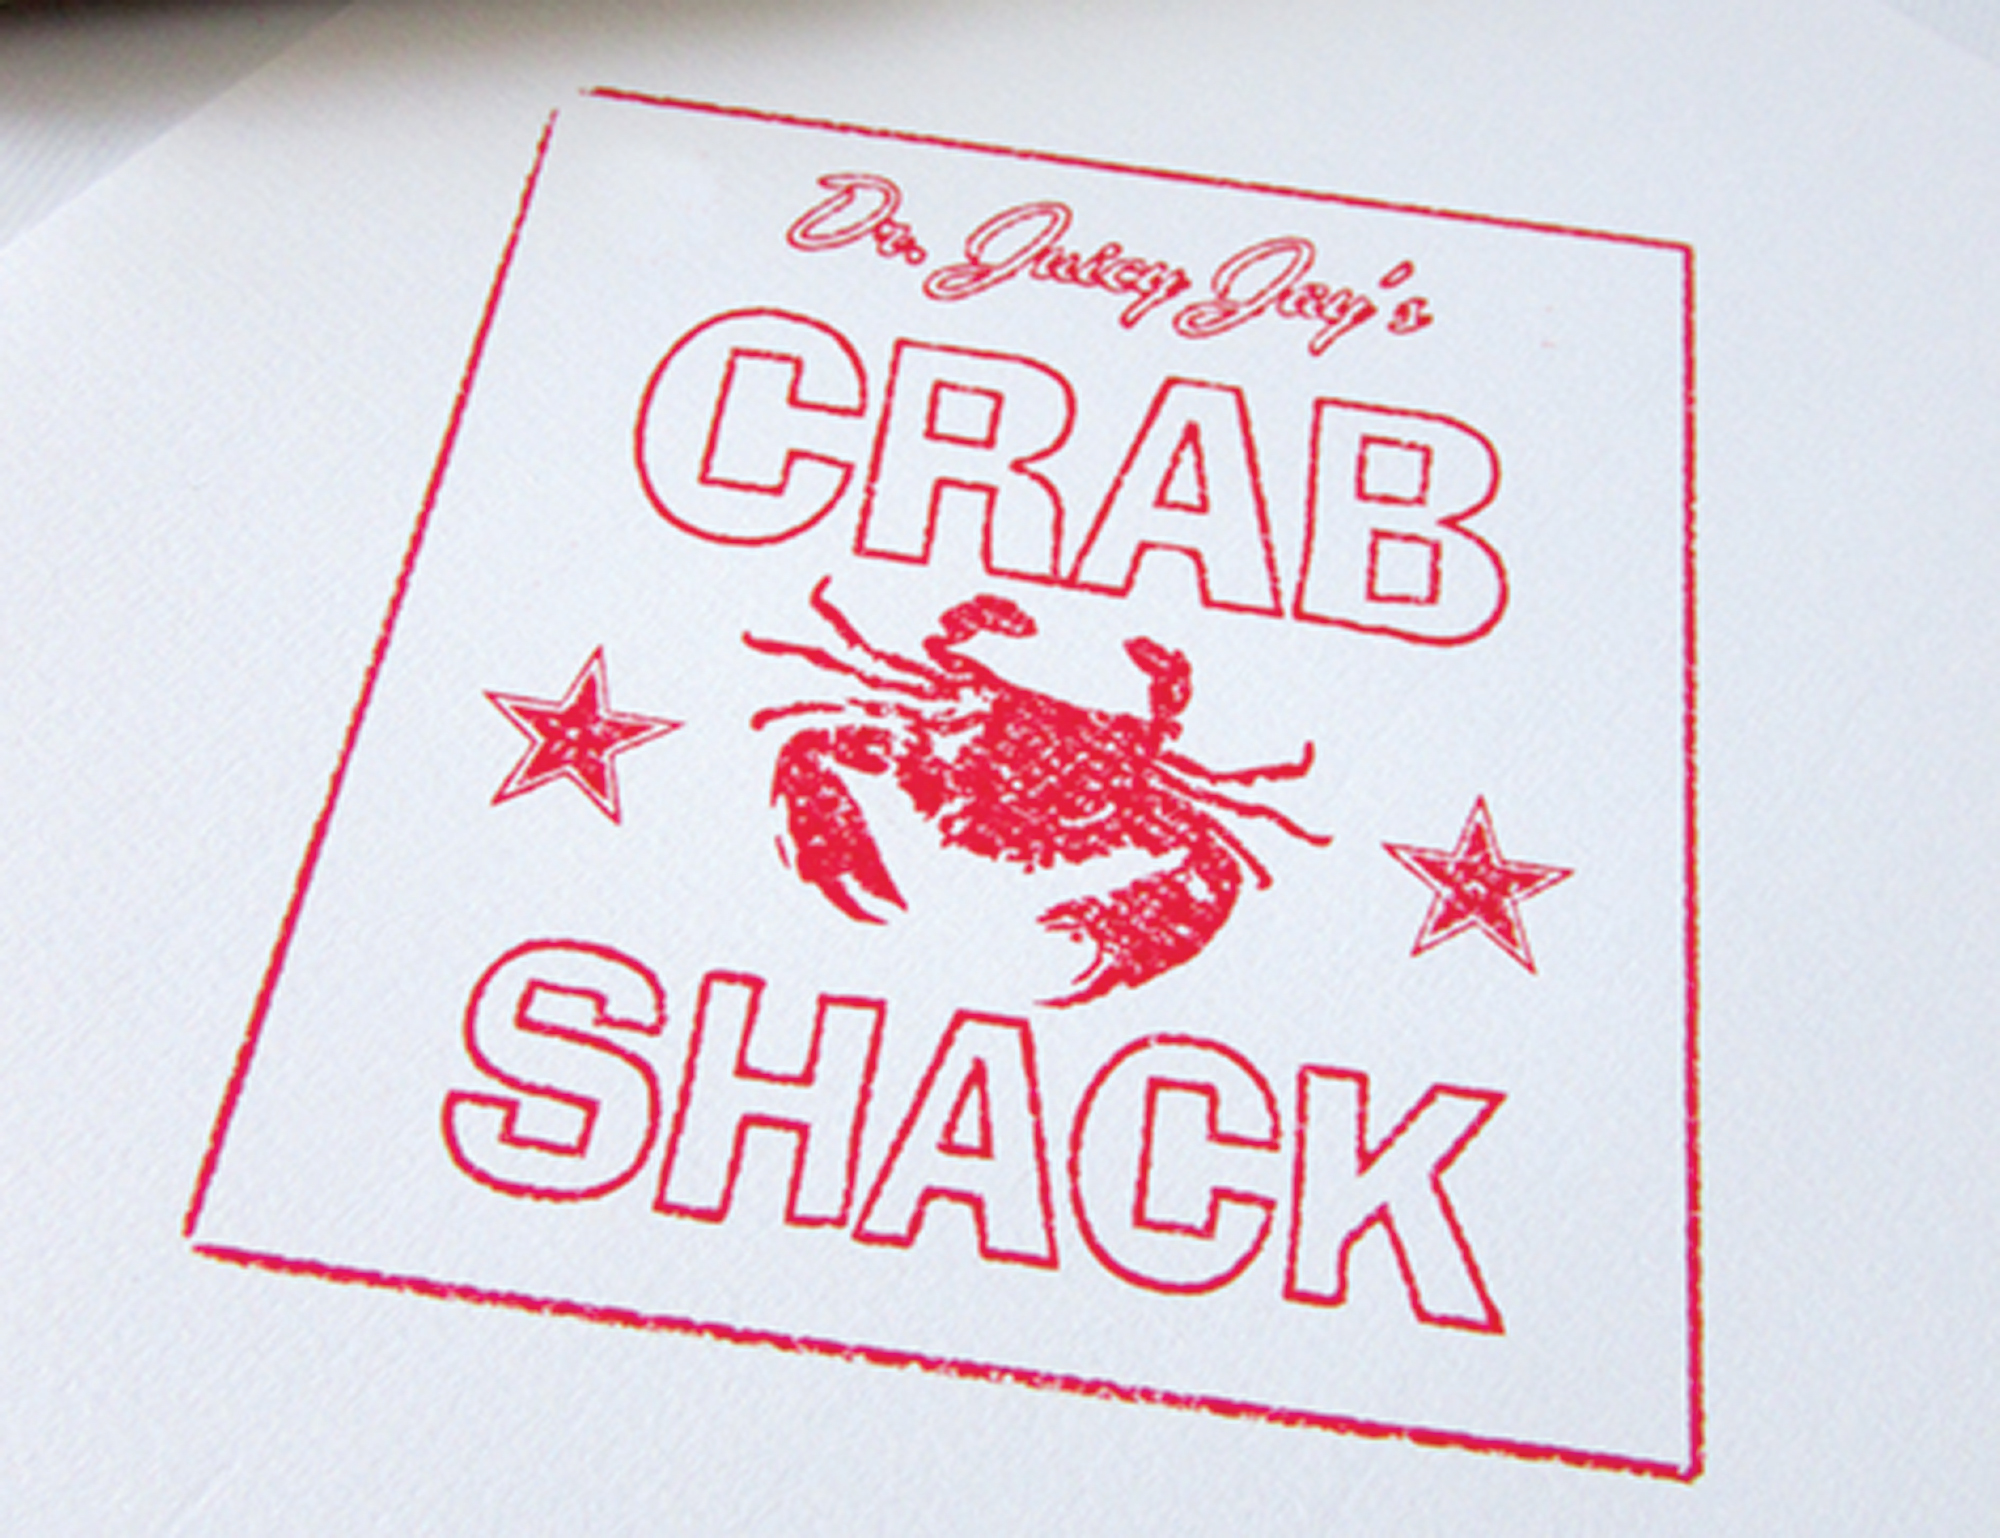 Crabshak – Rubber stamp